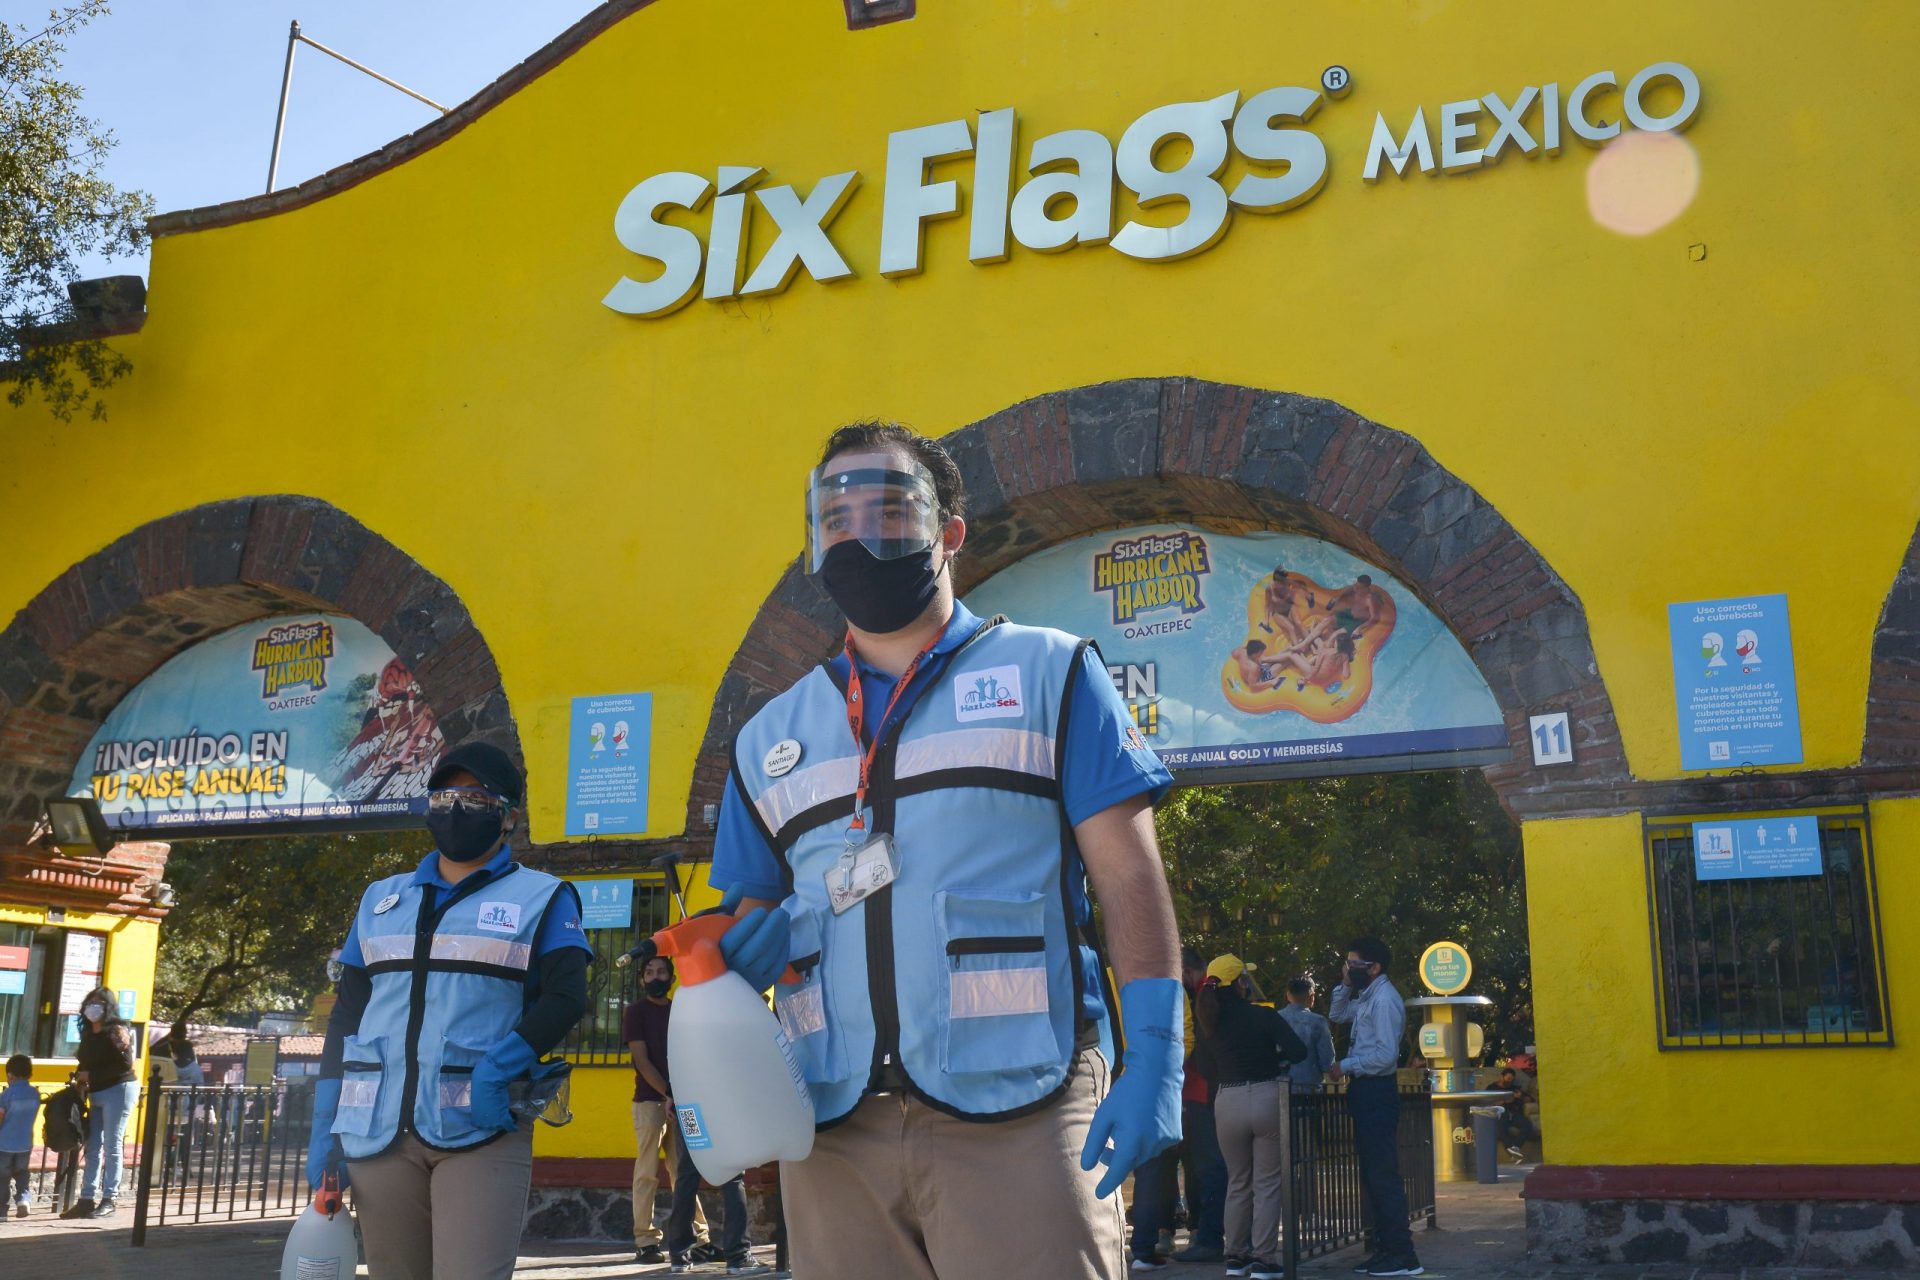  Six Flags México ya está abierto de nuevo ¡vamos por unos nachos!